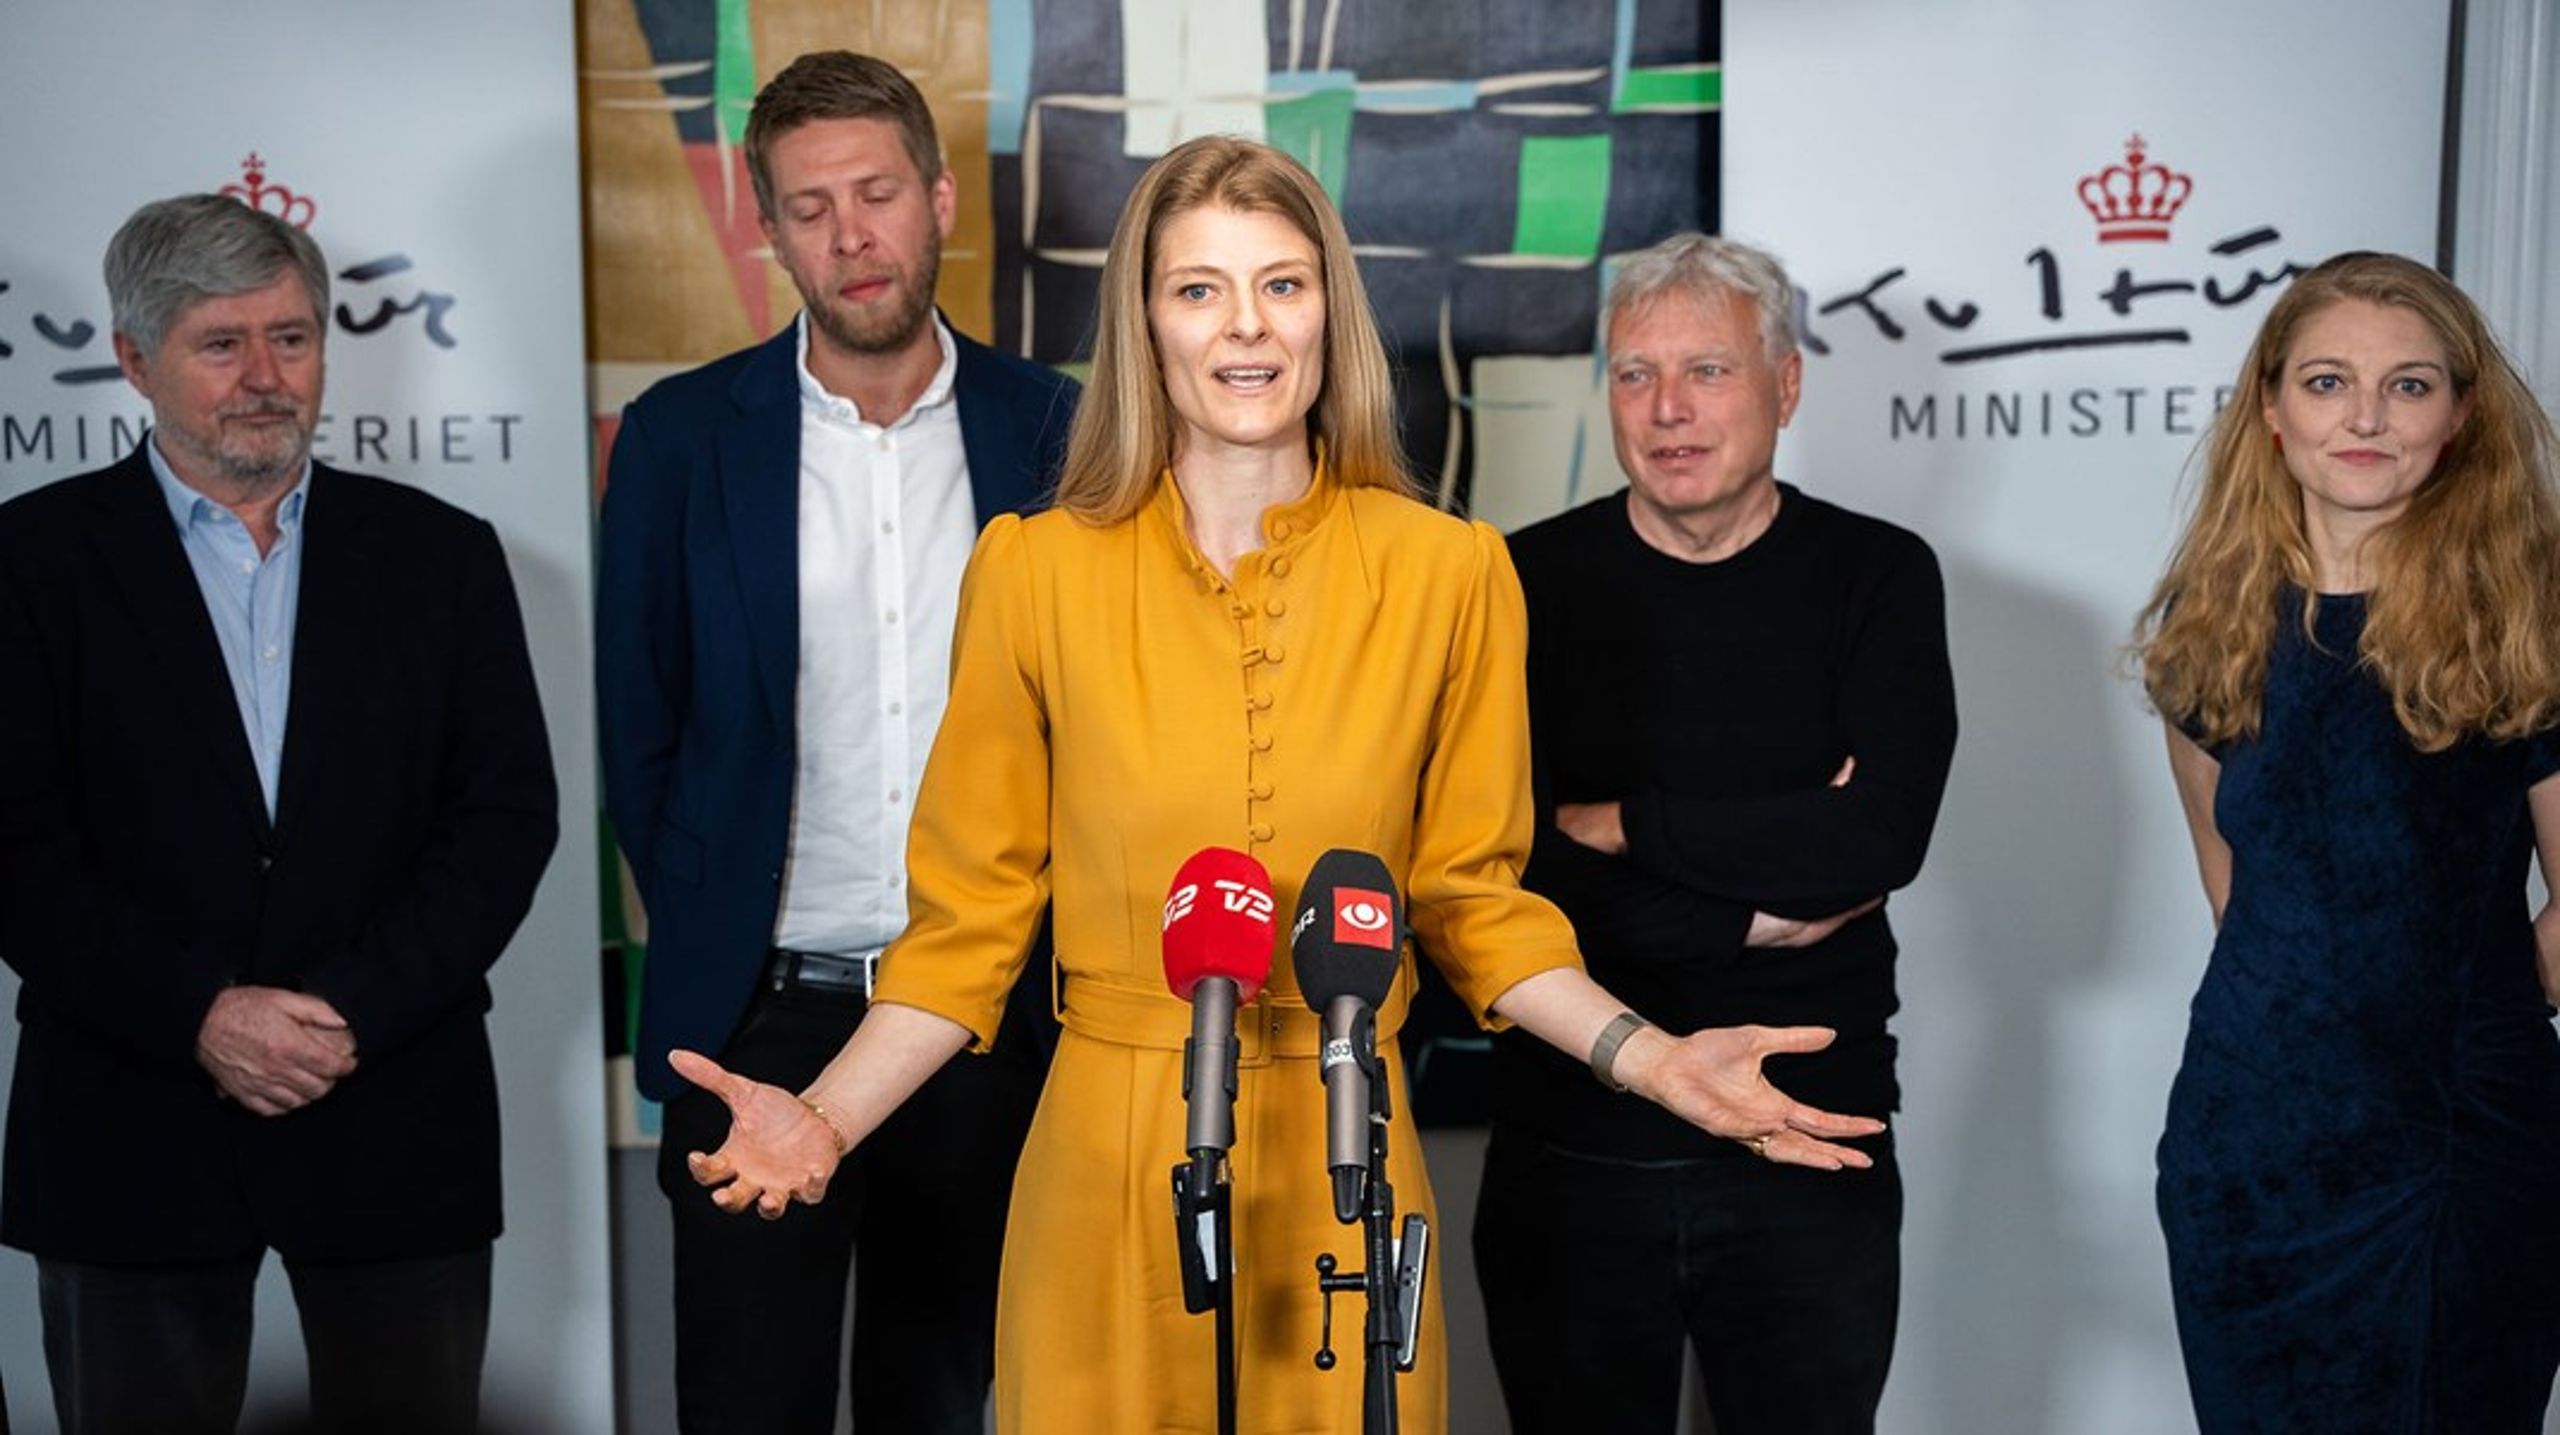 Kulturminister Ane Halsboe-Jørgensen præsenterer ny medieaftale, lørdag 21. maj, 2022.